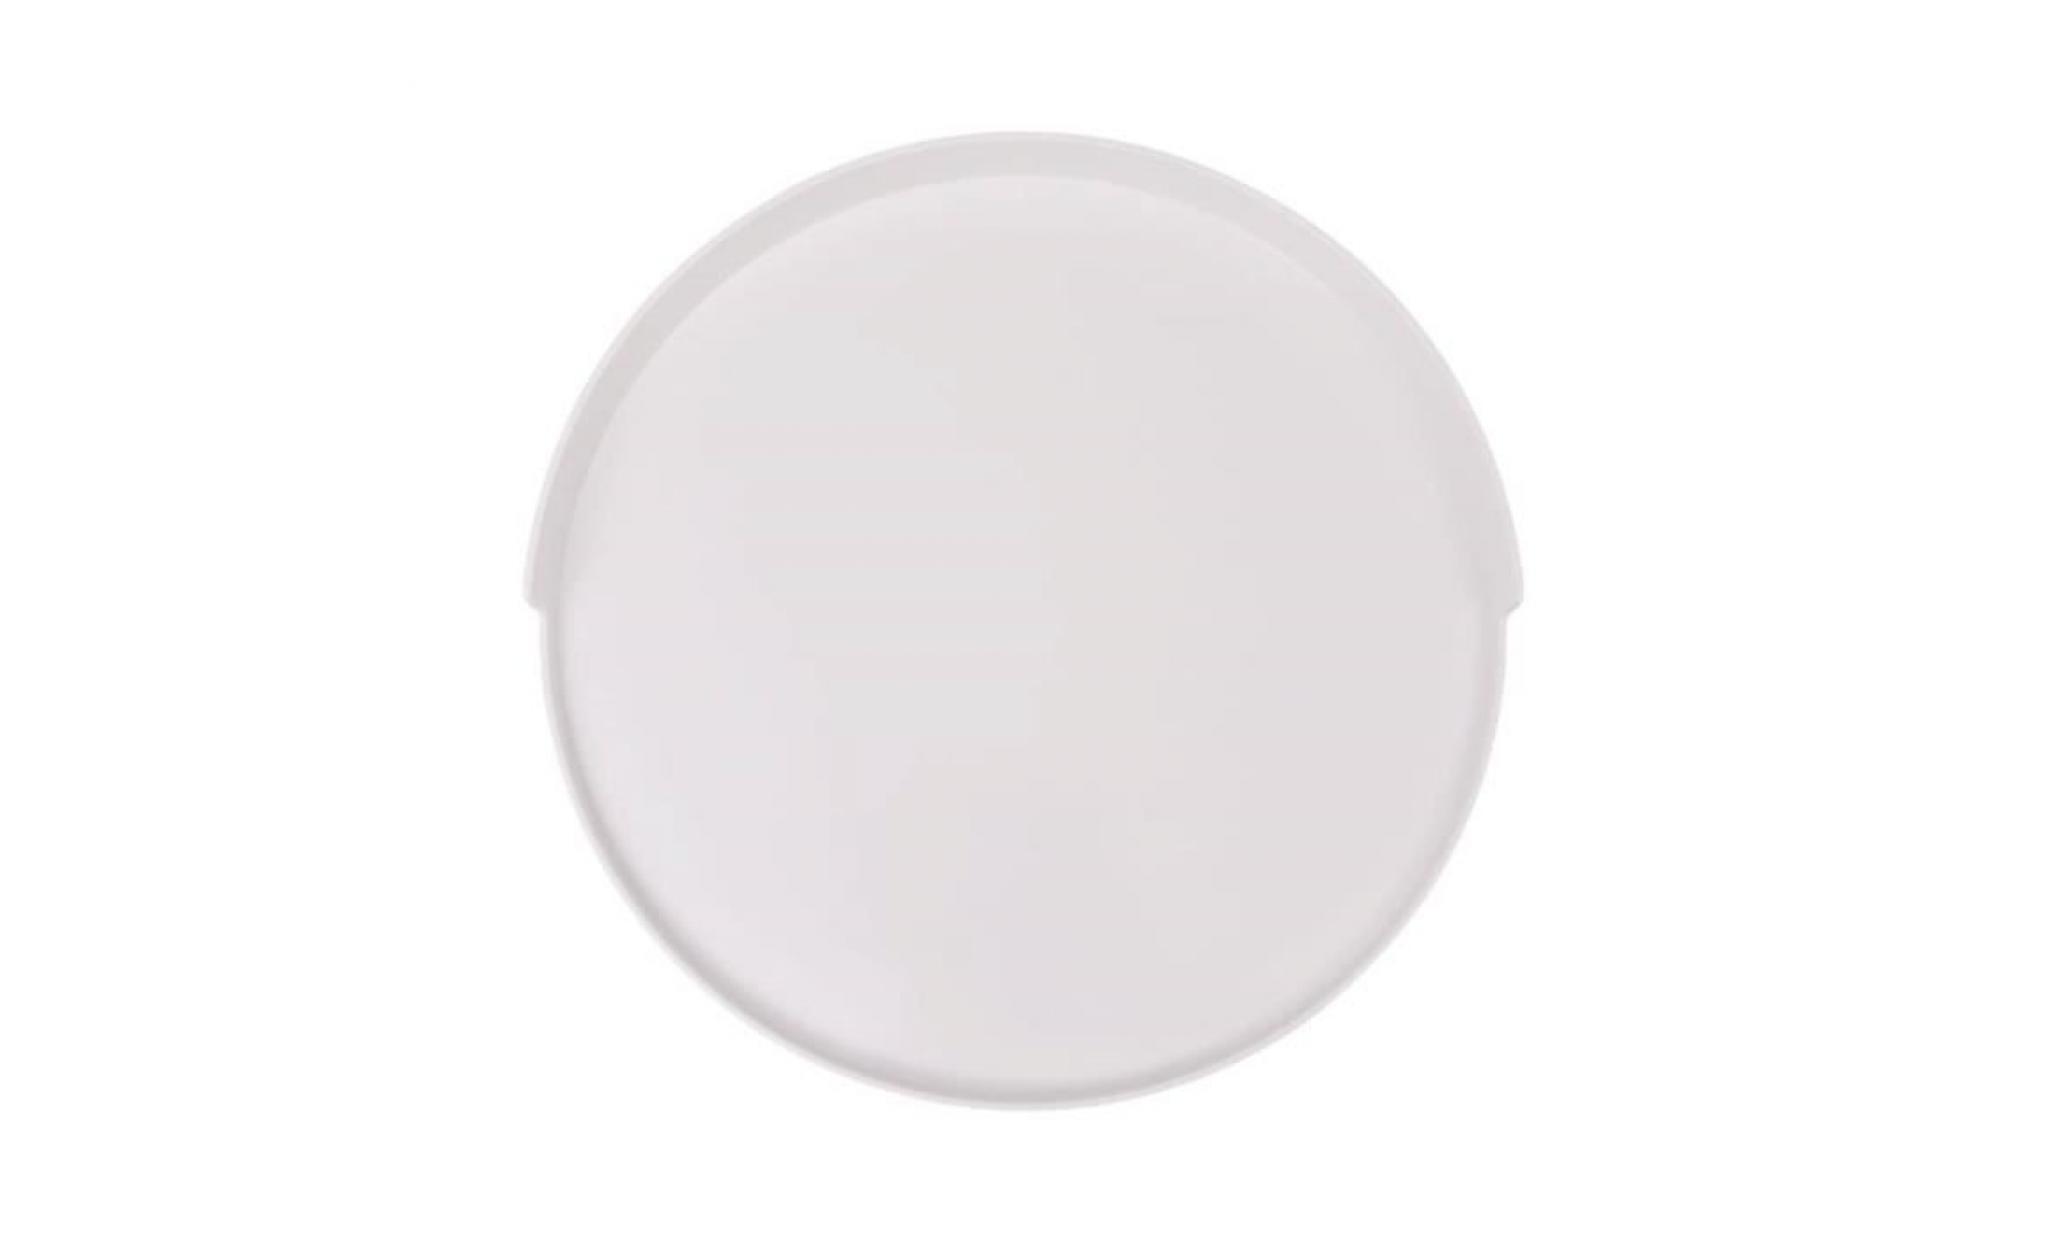 table basse  style contemporain ronde 40 x 45,5 cm blanc assemblage facile pas cher